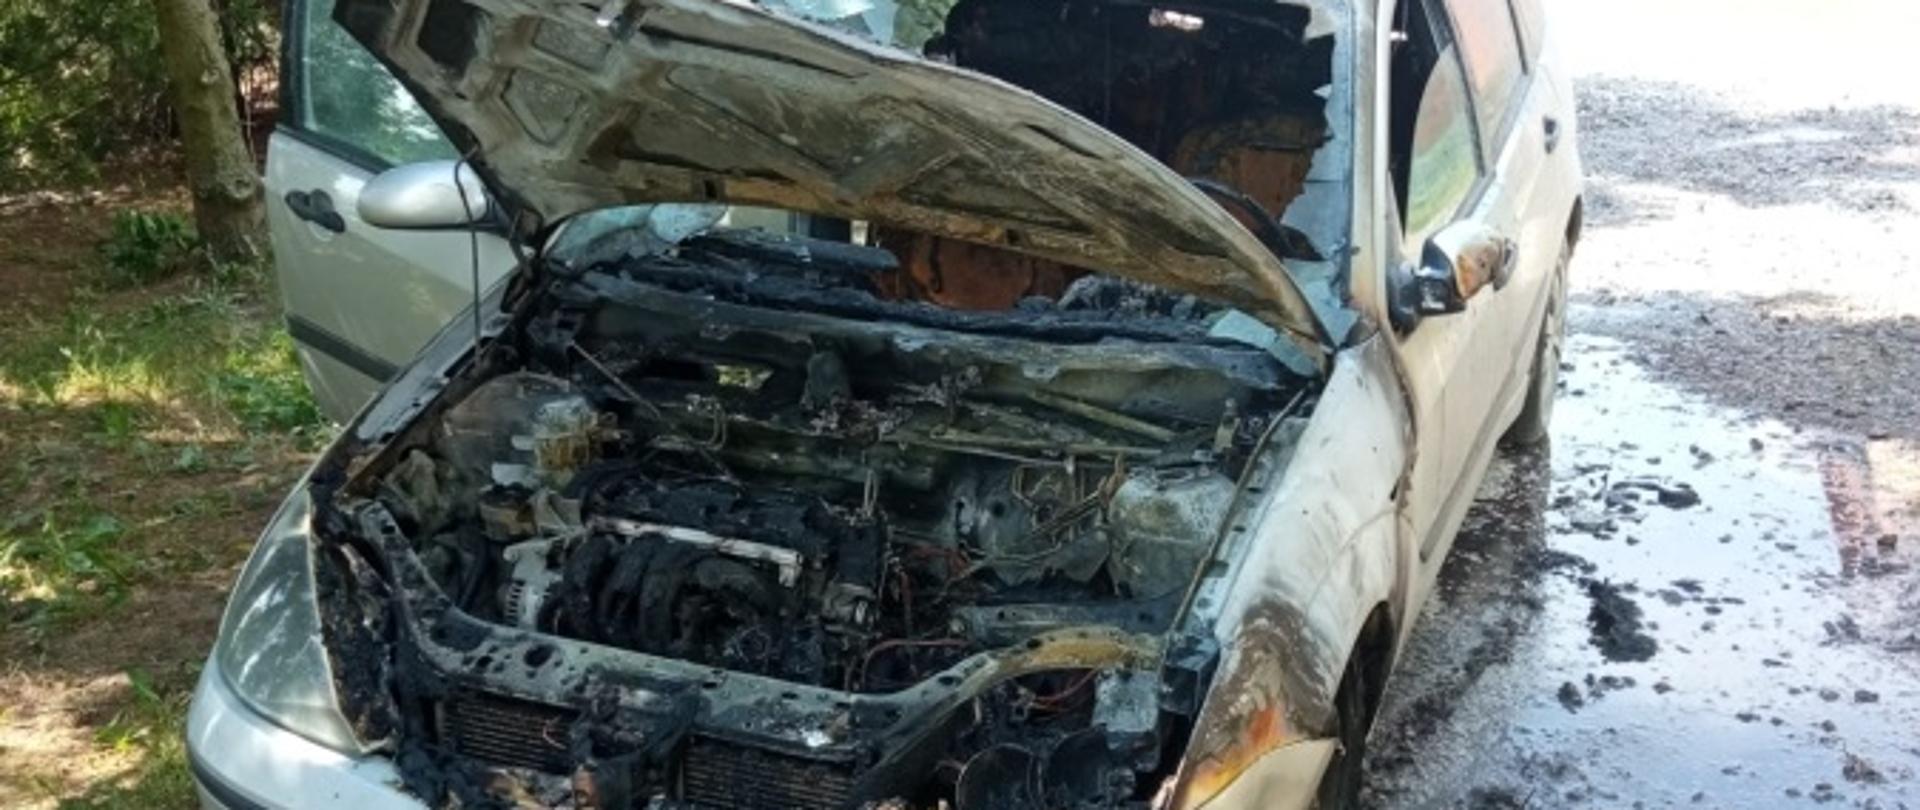 Na zdjęciu widoczny samochód osobowy typu combi w kolorze srebrnym, ze spaloną komorą silnika.